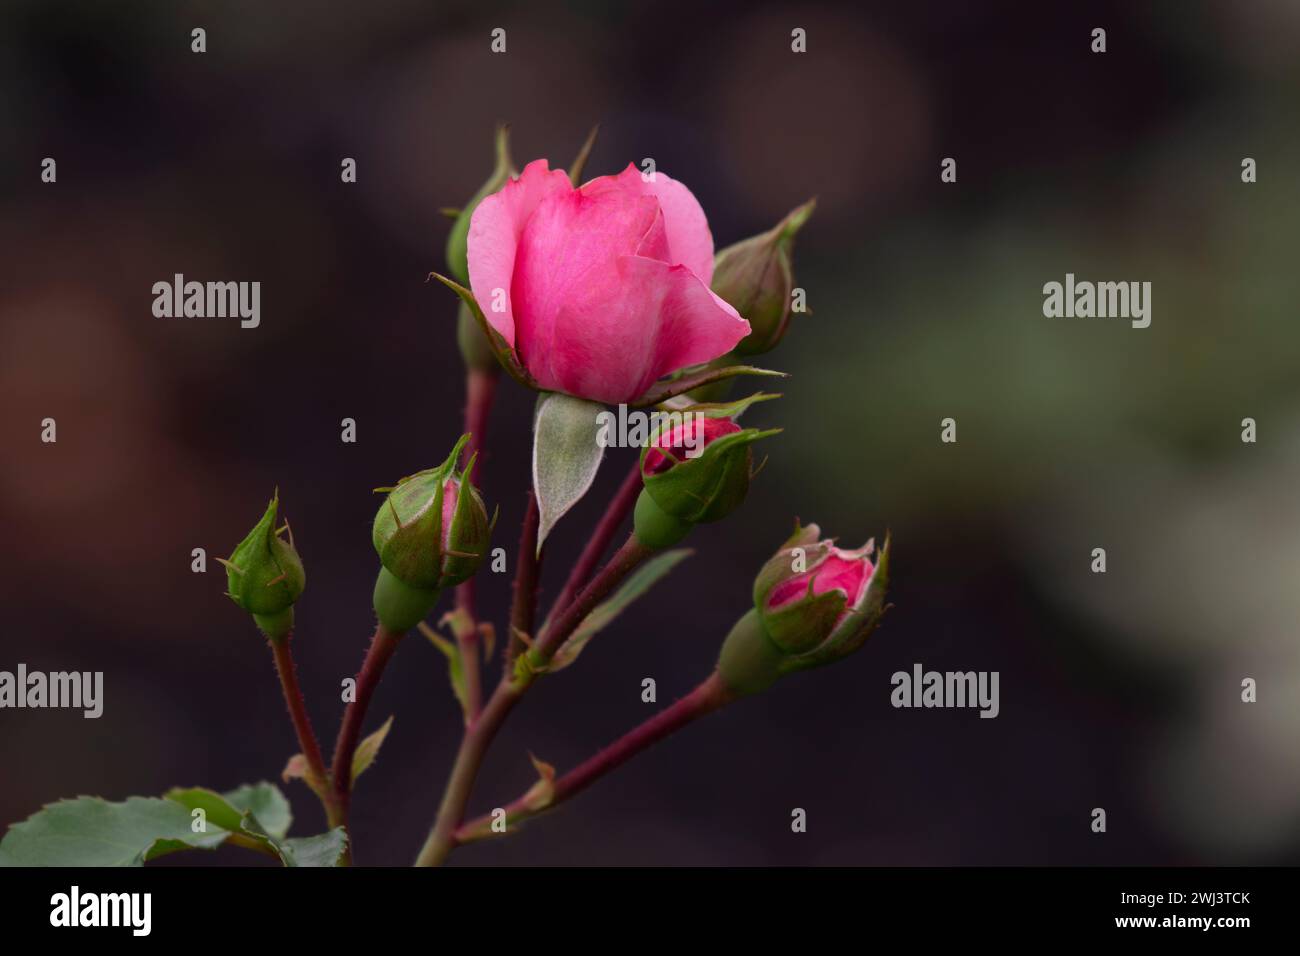 Der ausgewählte Fokus auf rosigen Blütenblättern auf voller Rosenblüte, umgeben von mehreren blühenden Blüten, erzeugt einen horizontalen floralen Hintergrund mit Kopierraum auf der rechten Seite Stockfoto